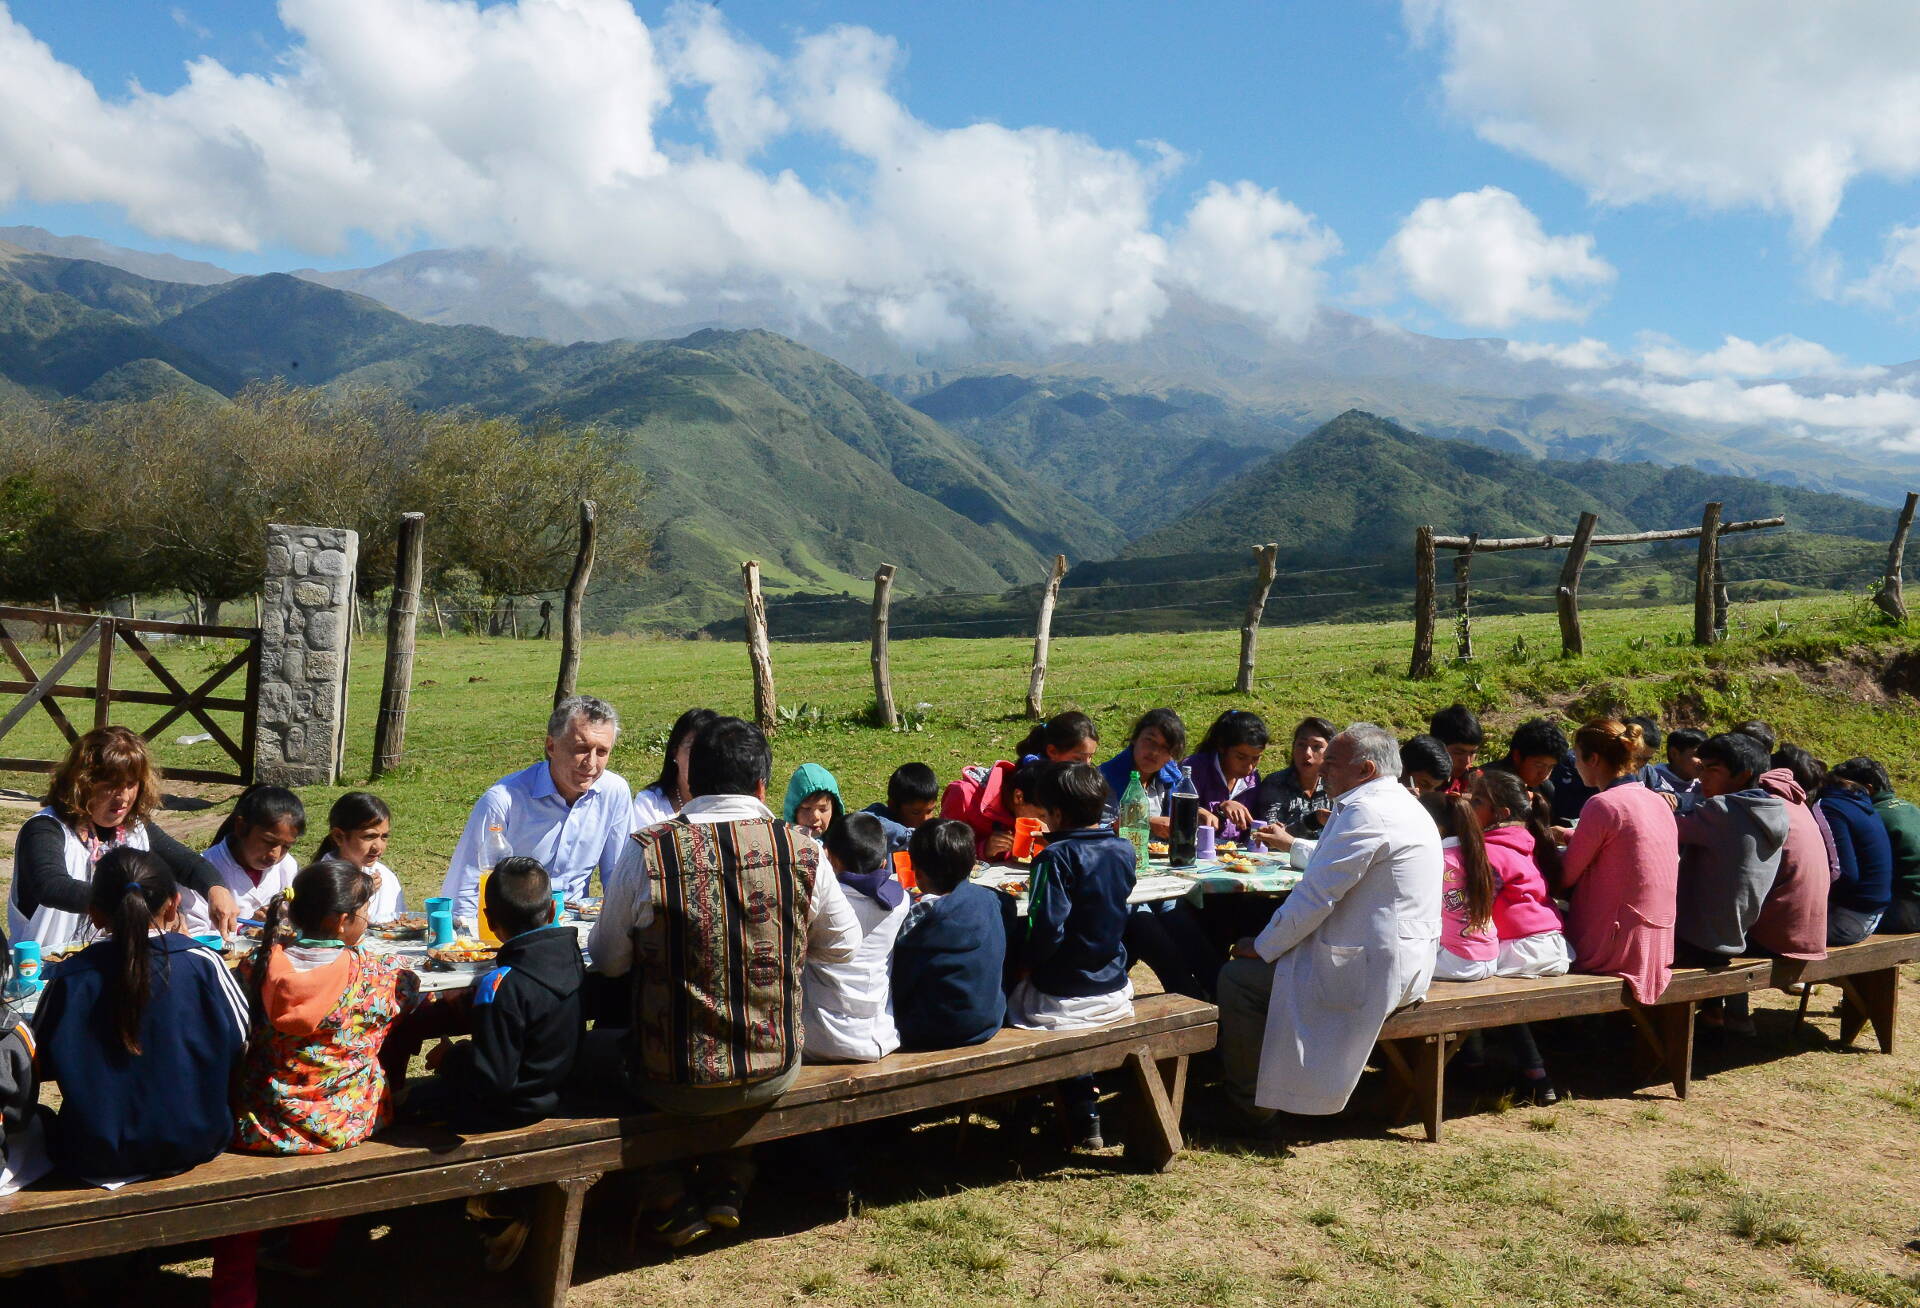 Macri visitó una escuela de montaña en Tucumán